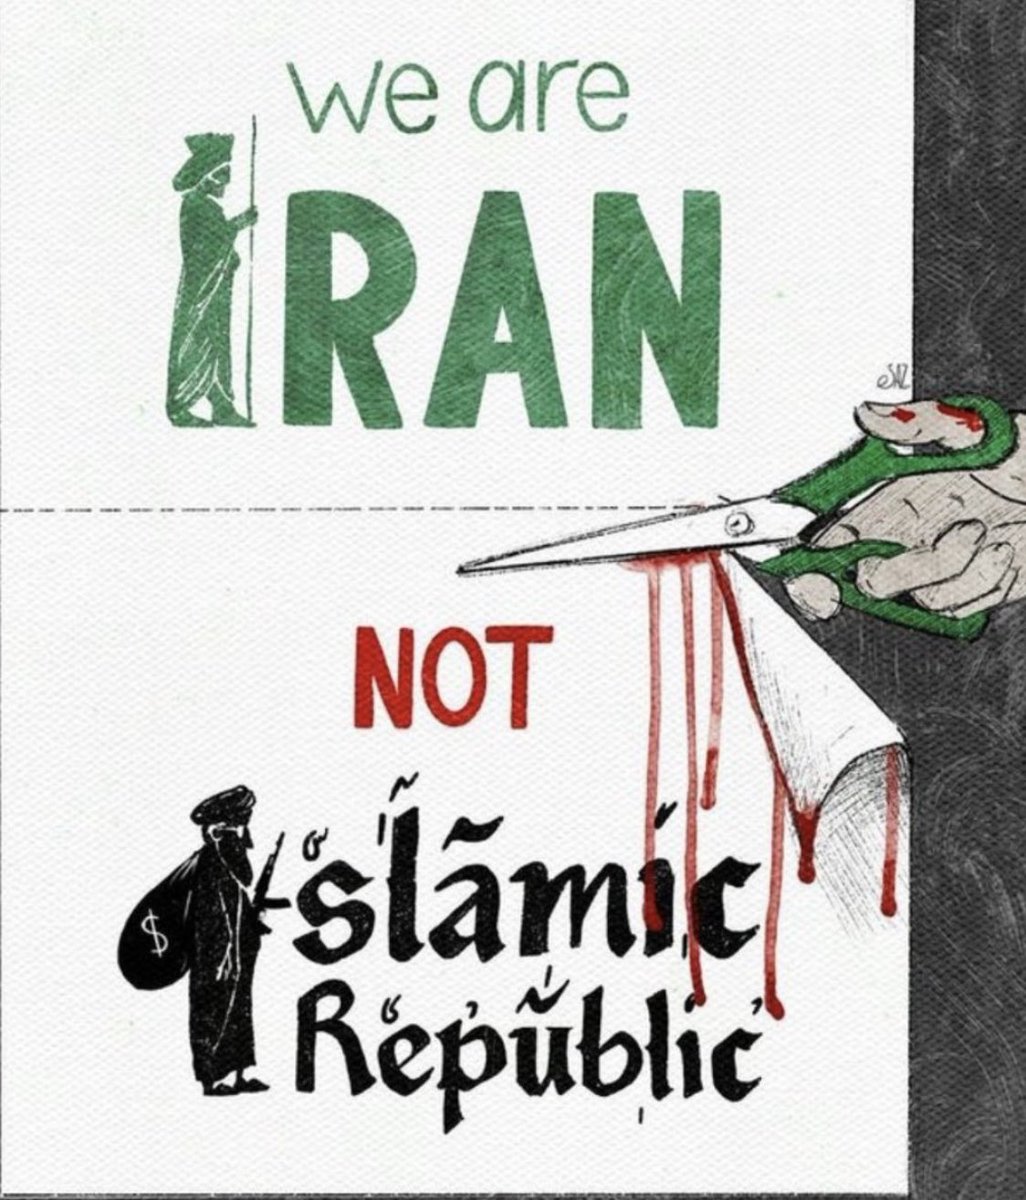 @ImtiazMadmood #IranianStandWithIsrael 
#HamasAreTerrorists 
#IRGCterorrists